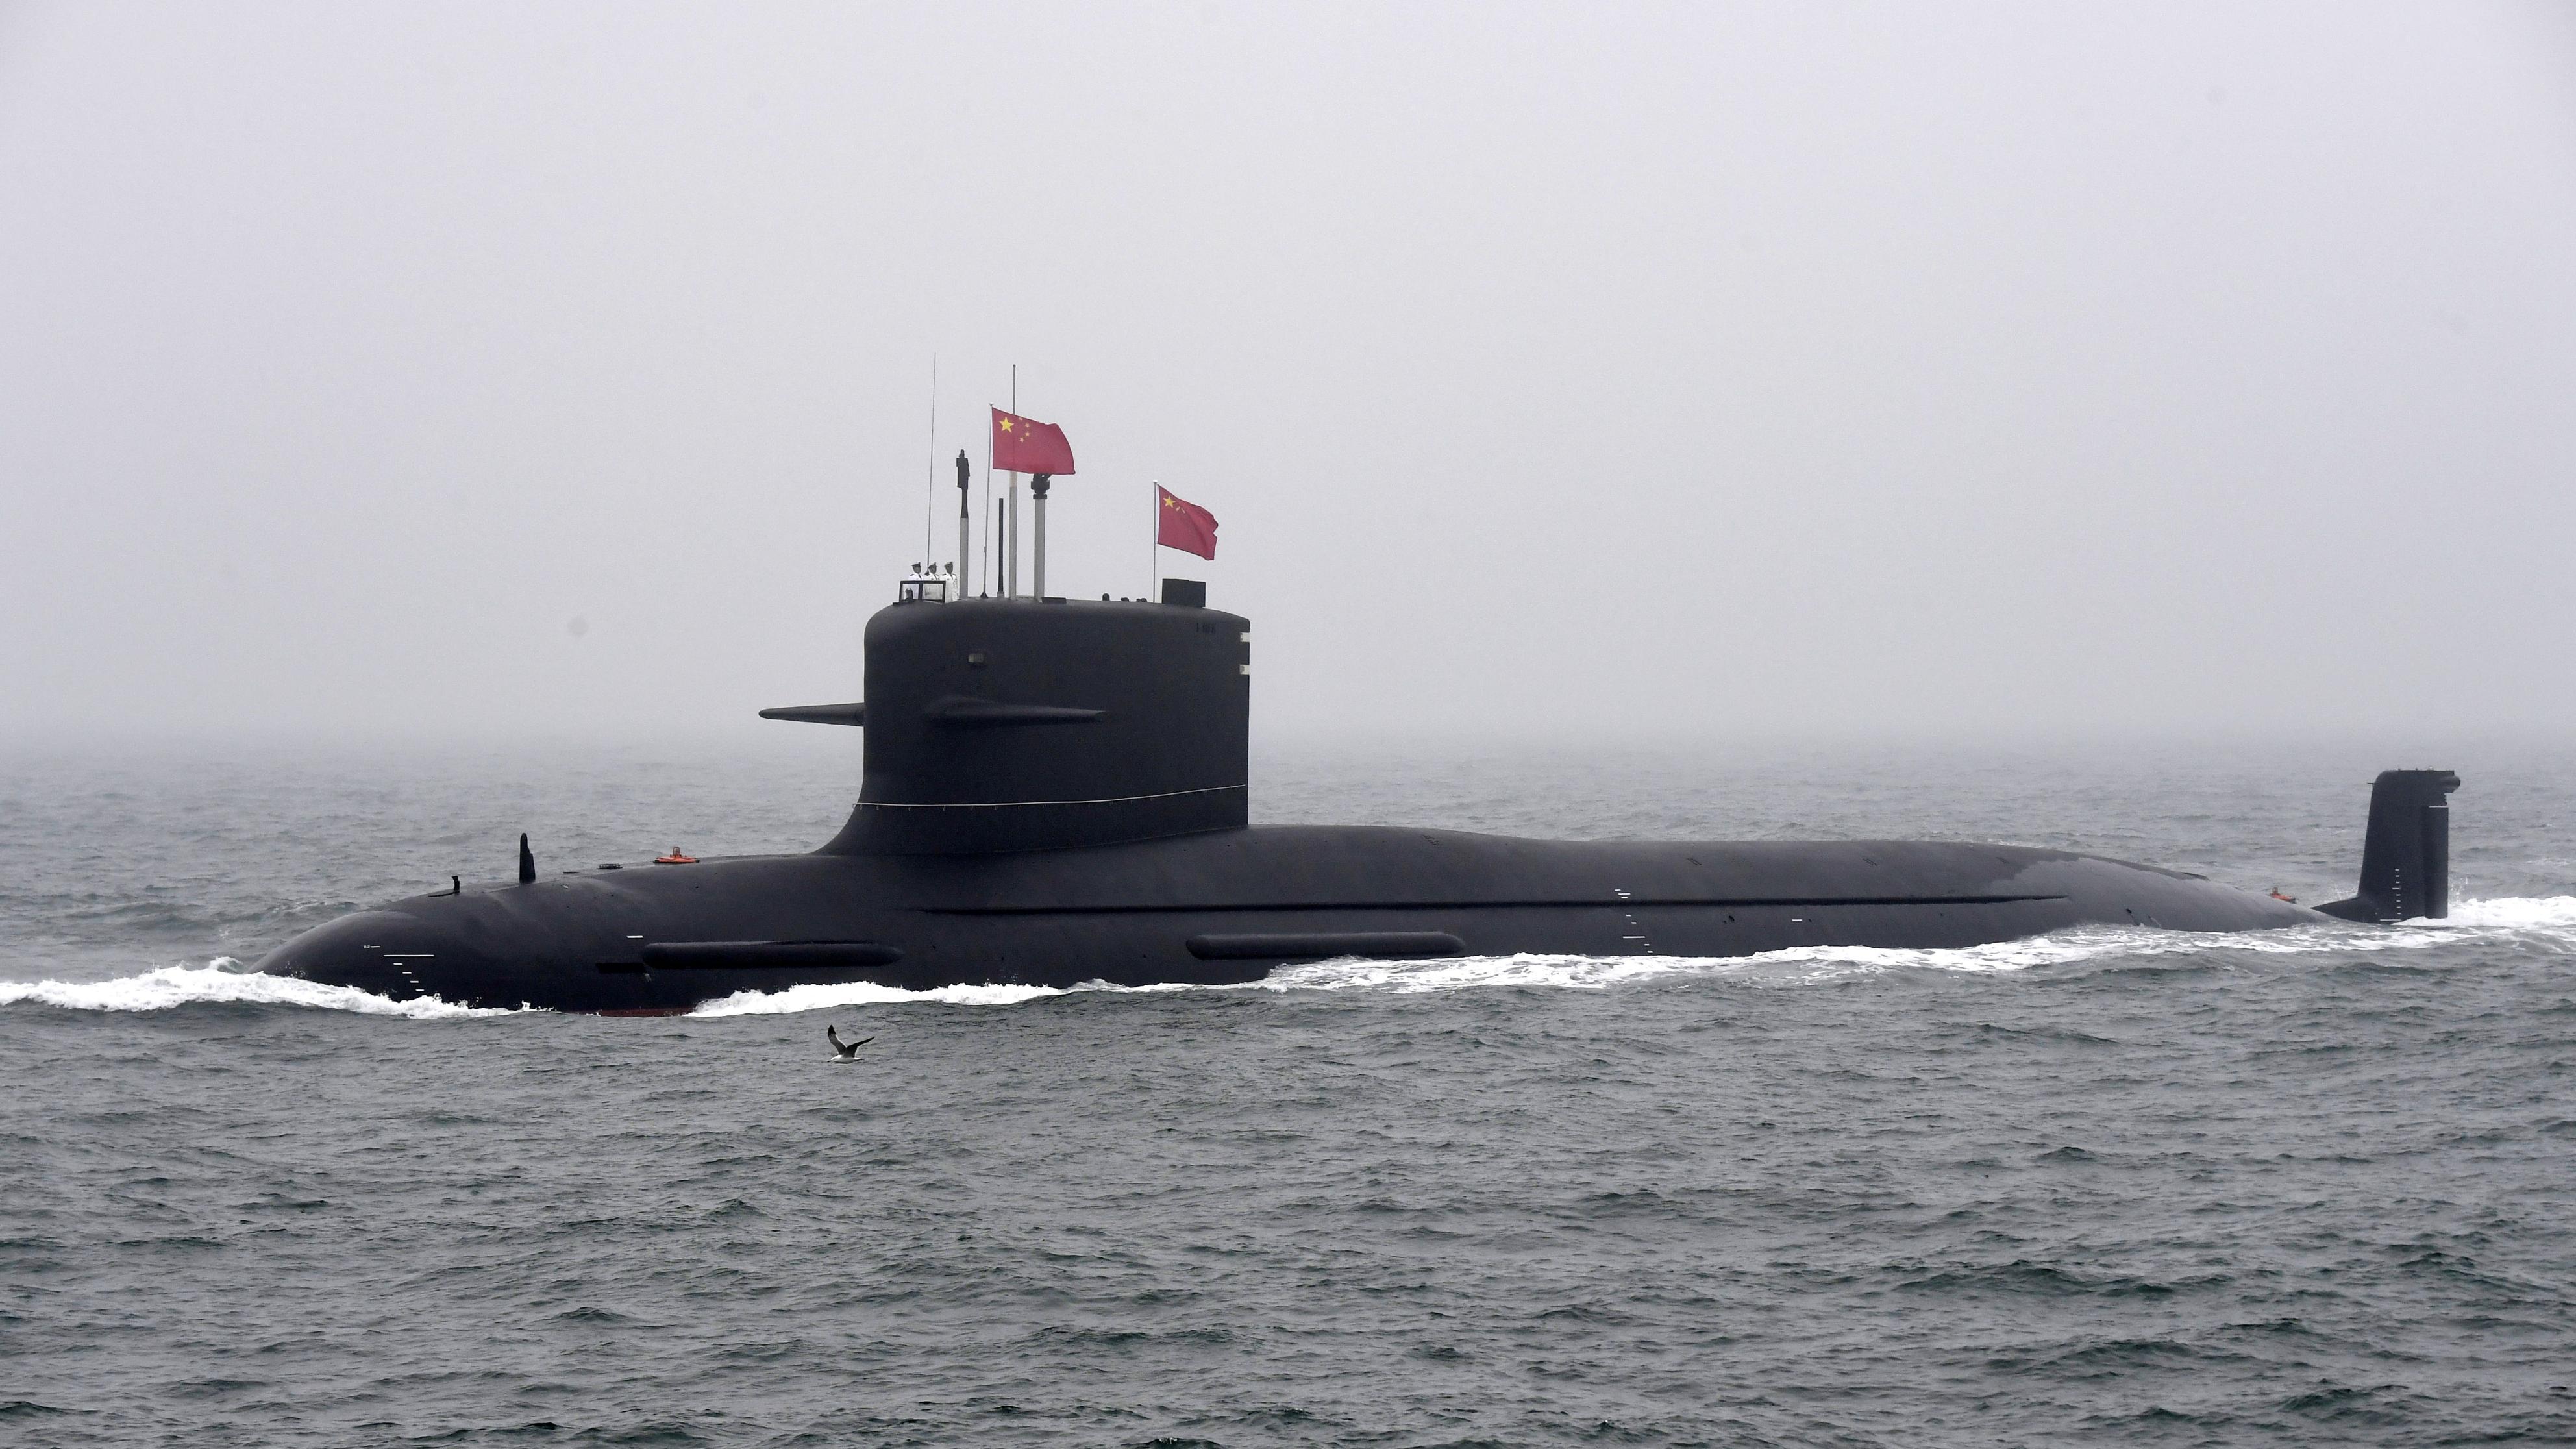 中国核潜艇型号一览表图片